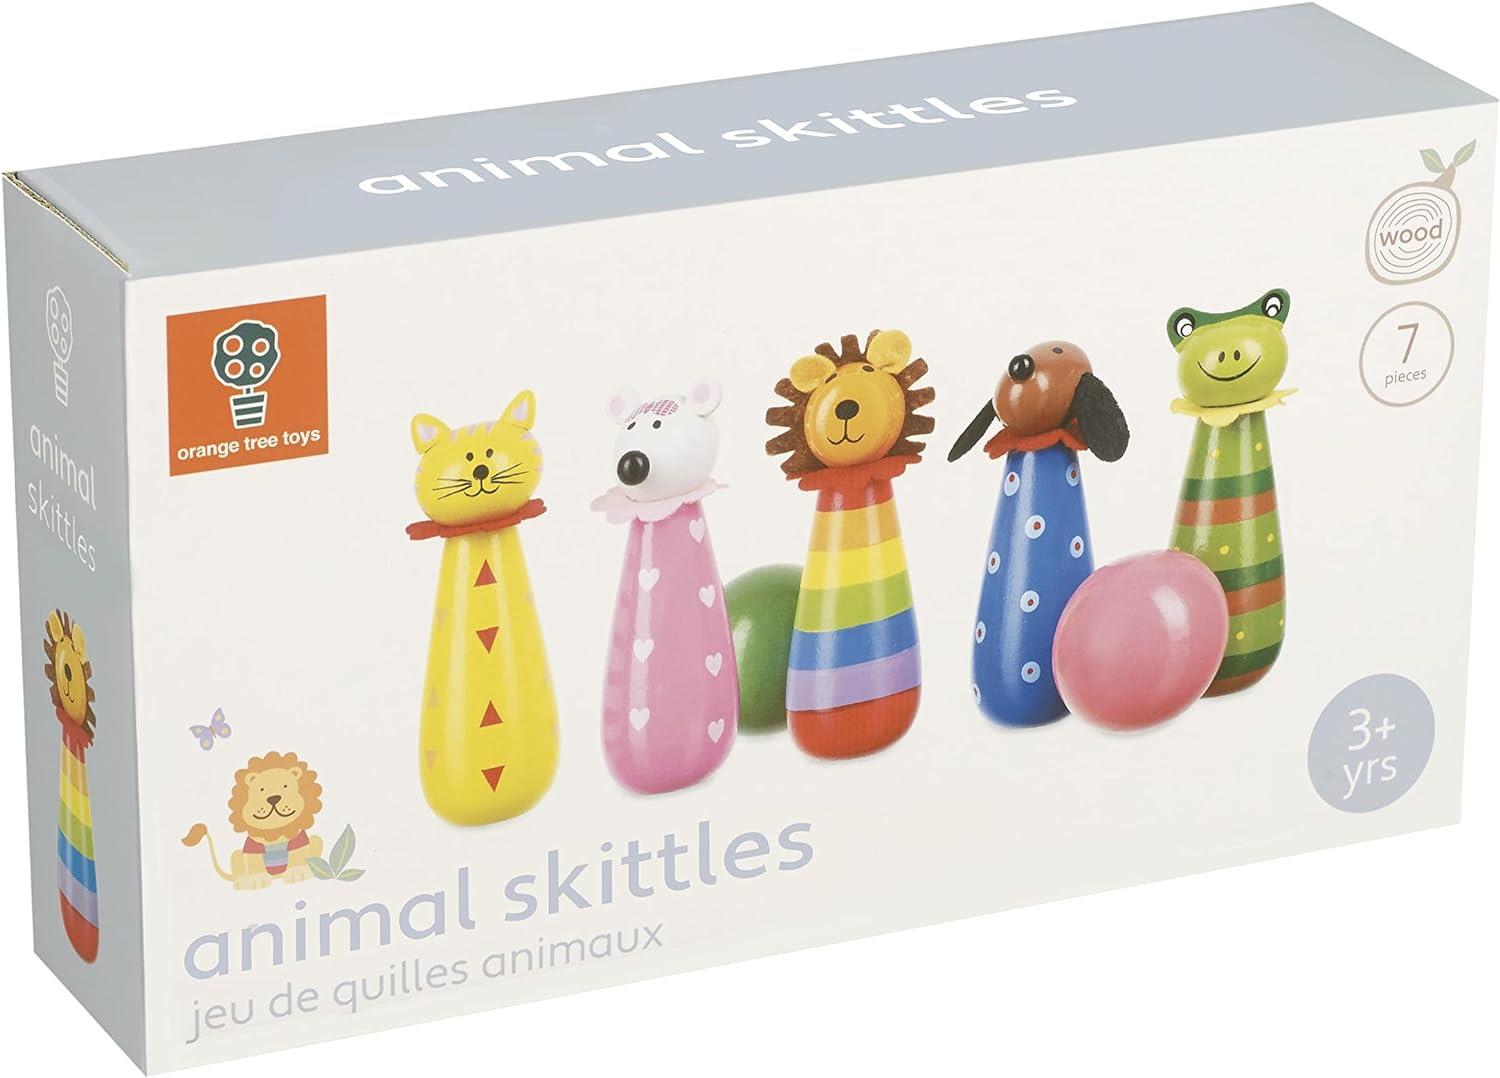 Orange Tree Toys Wooden Animal Skittles